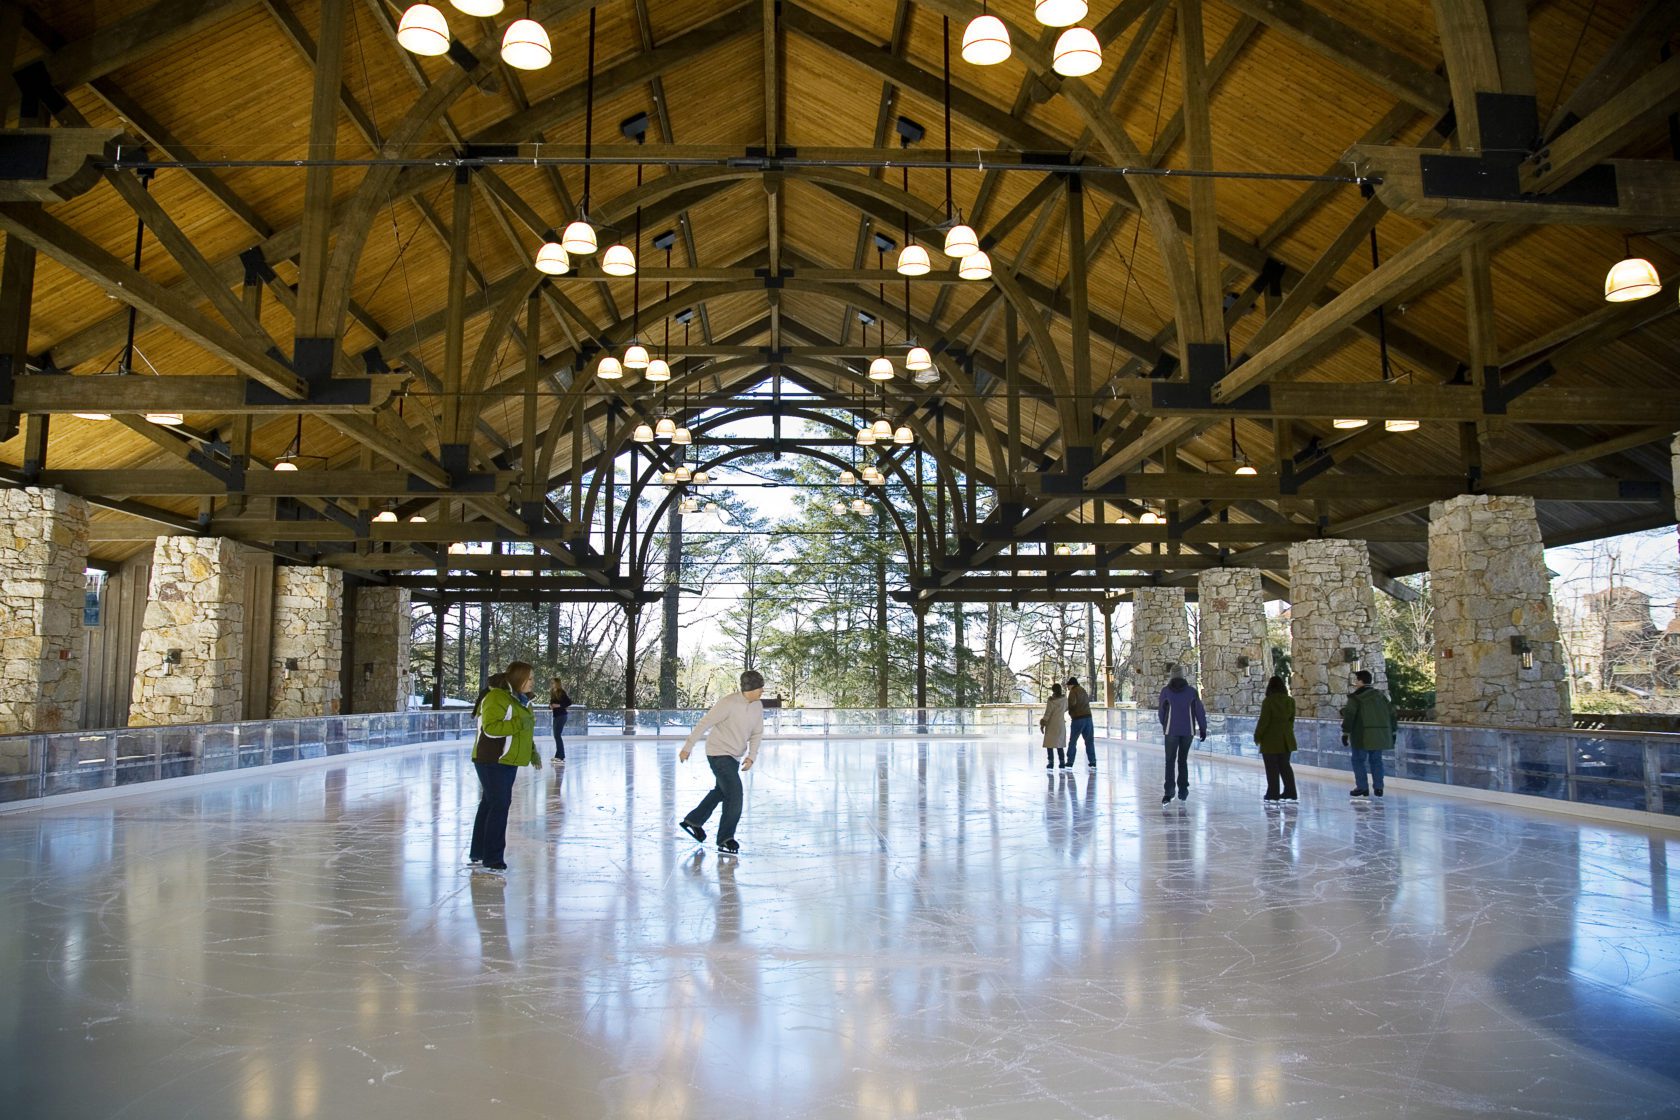 Ice Skating Pavilion at Mohonk